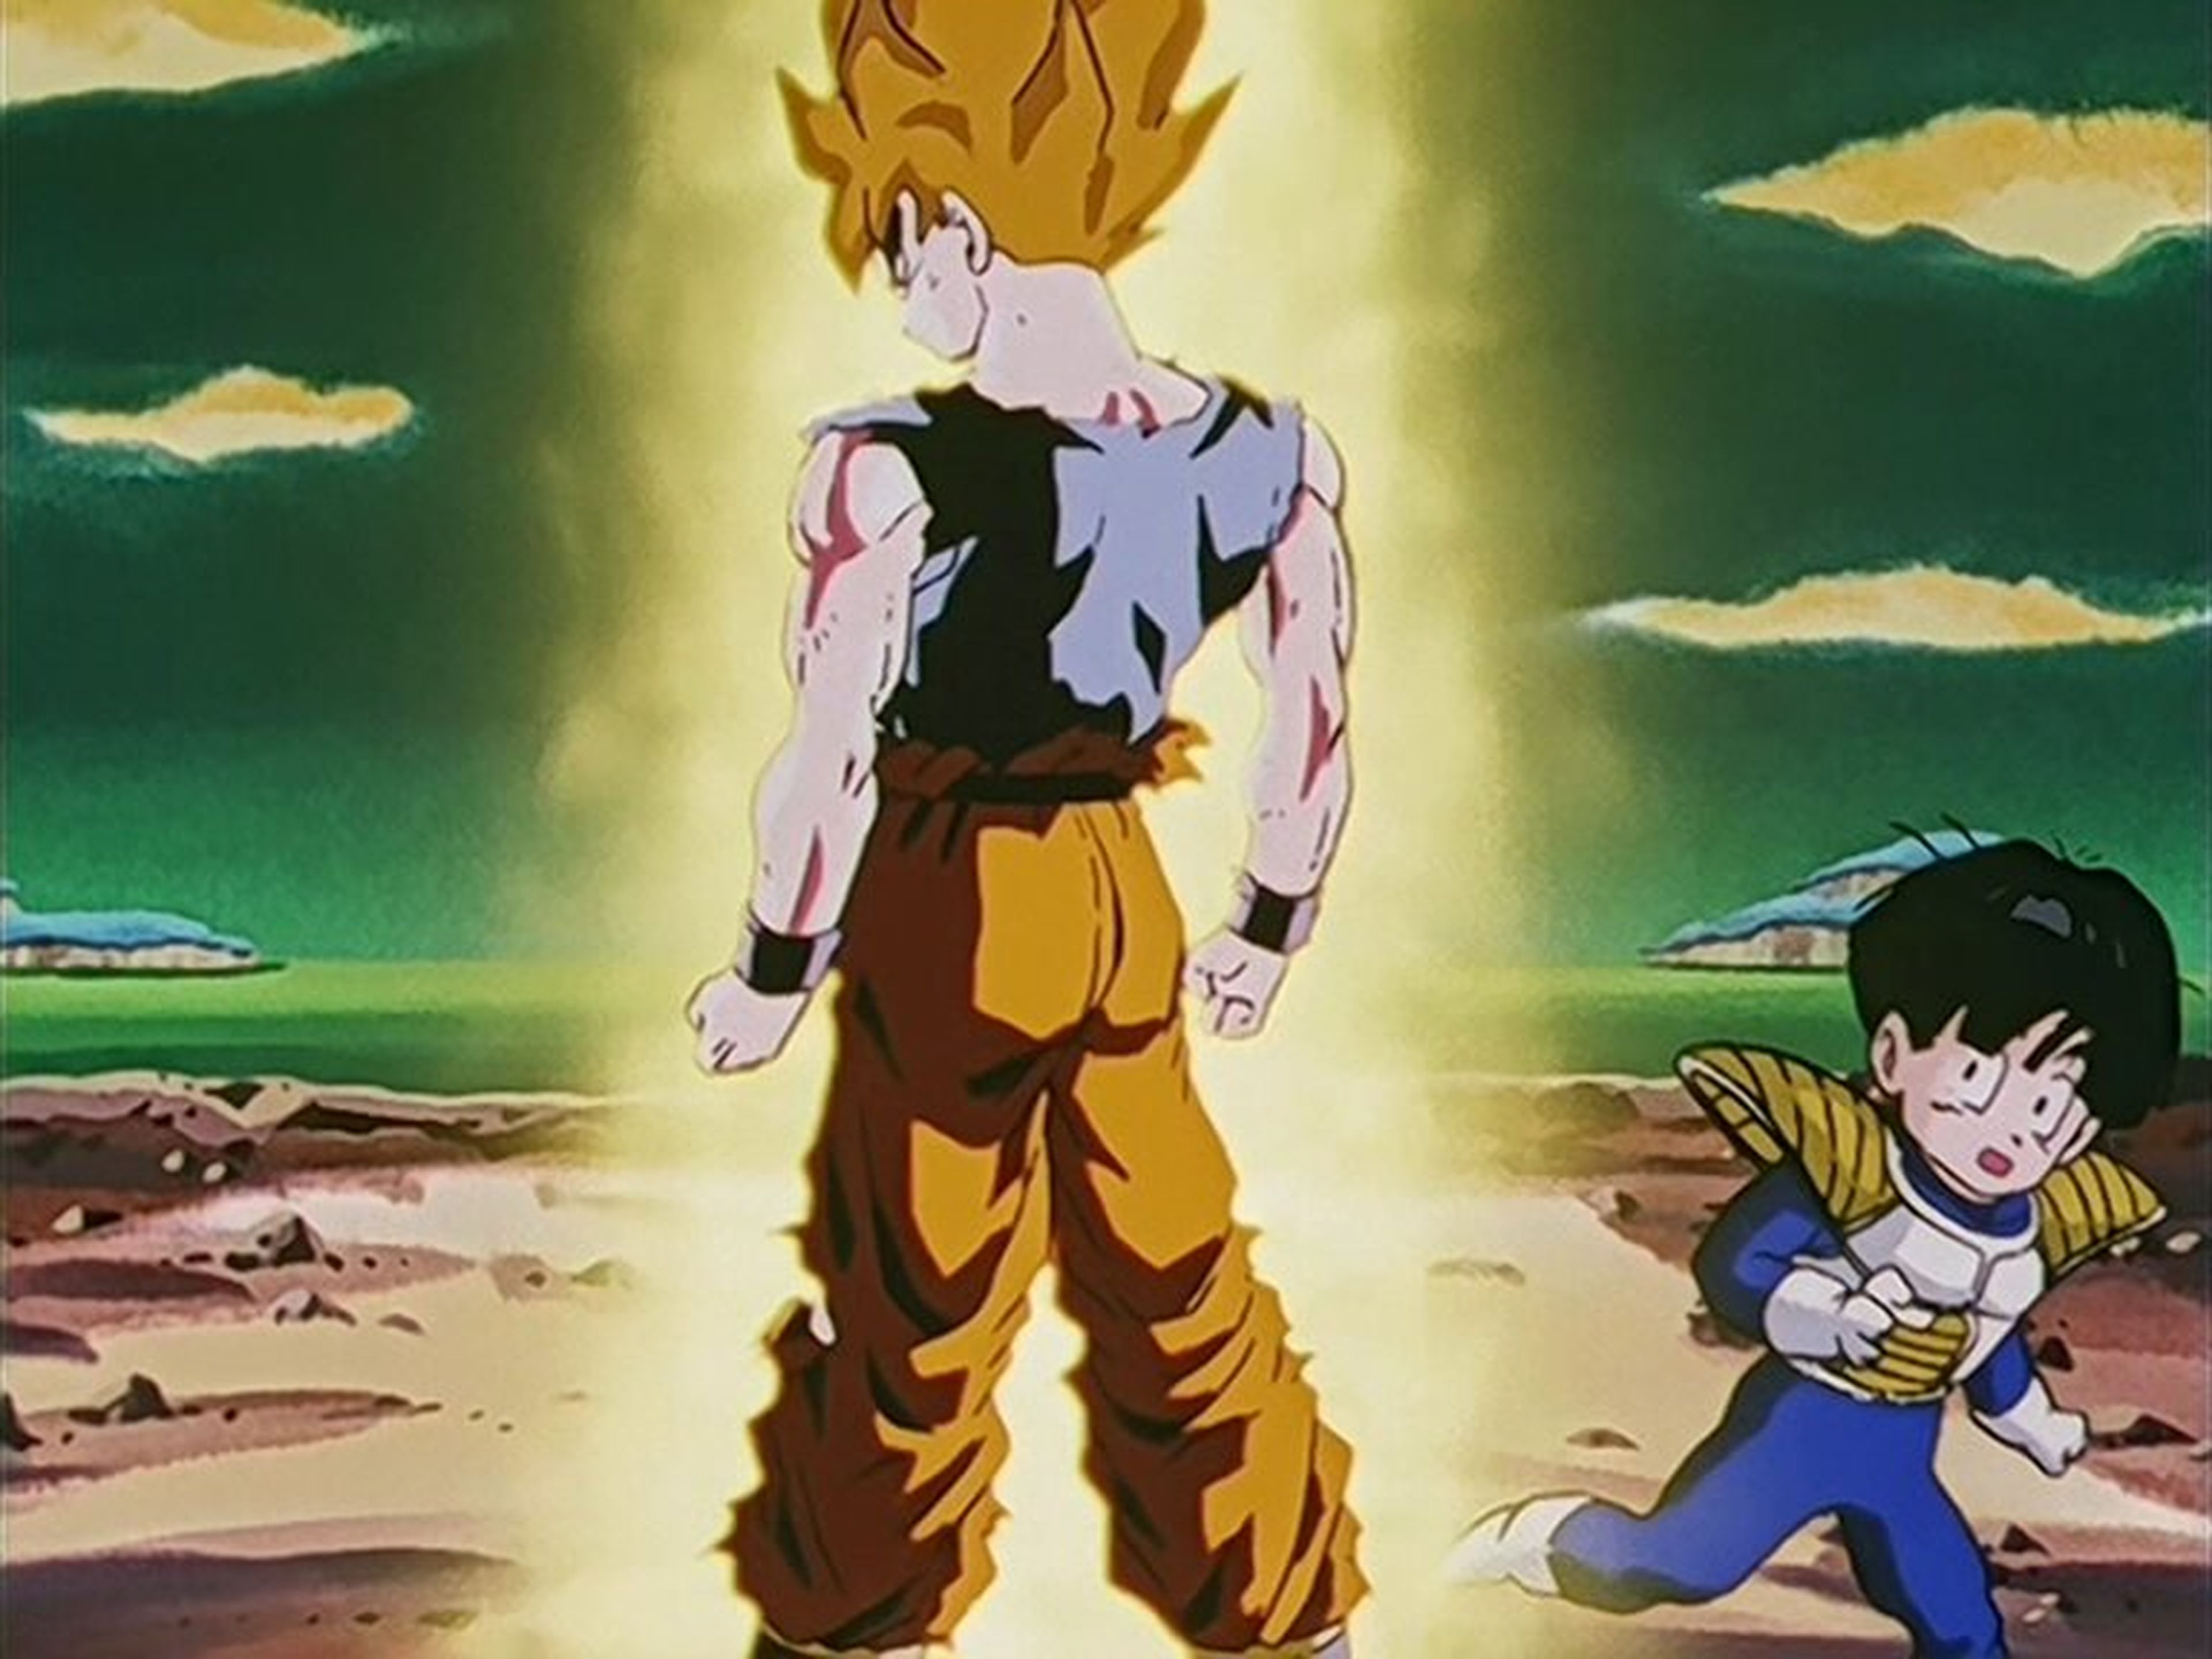 Dragon Ball Z capítulo 95 - Análisis y curiosidades con la transformación de Goku en Super Saiyan